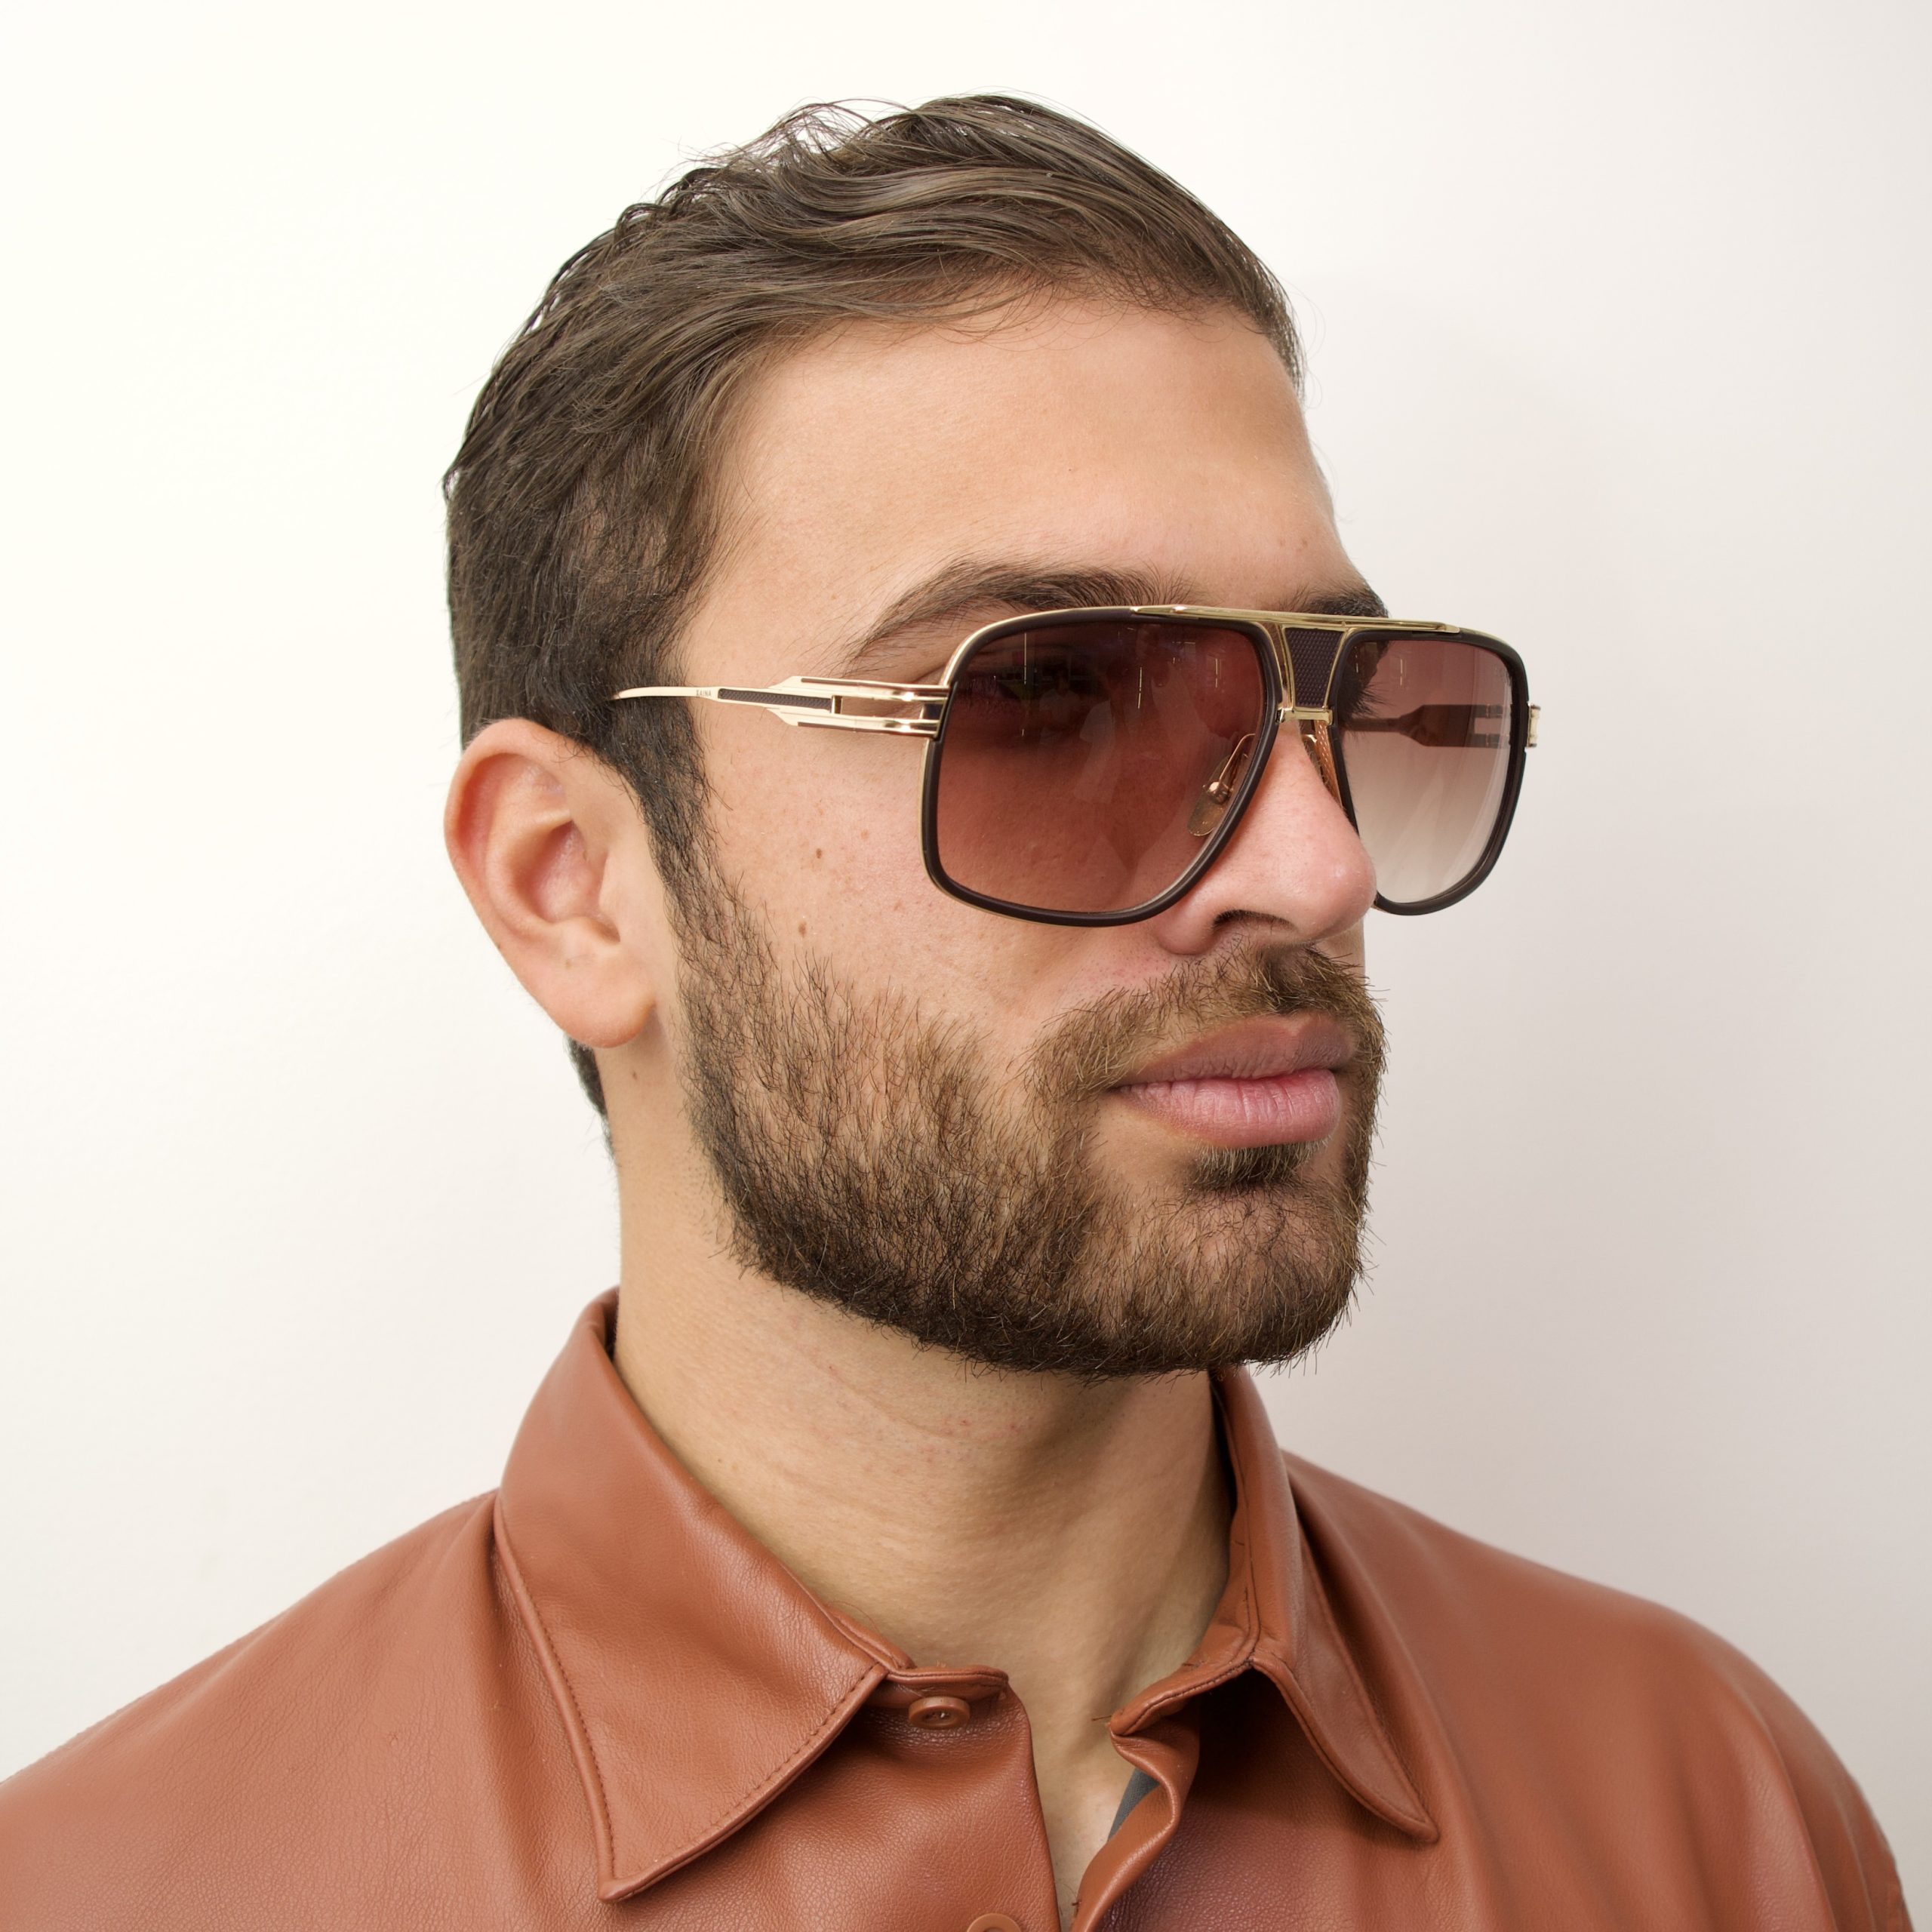 Cool Sunglasses Menuv400 Gradient Sunglasses For Men - Retro